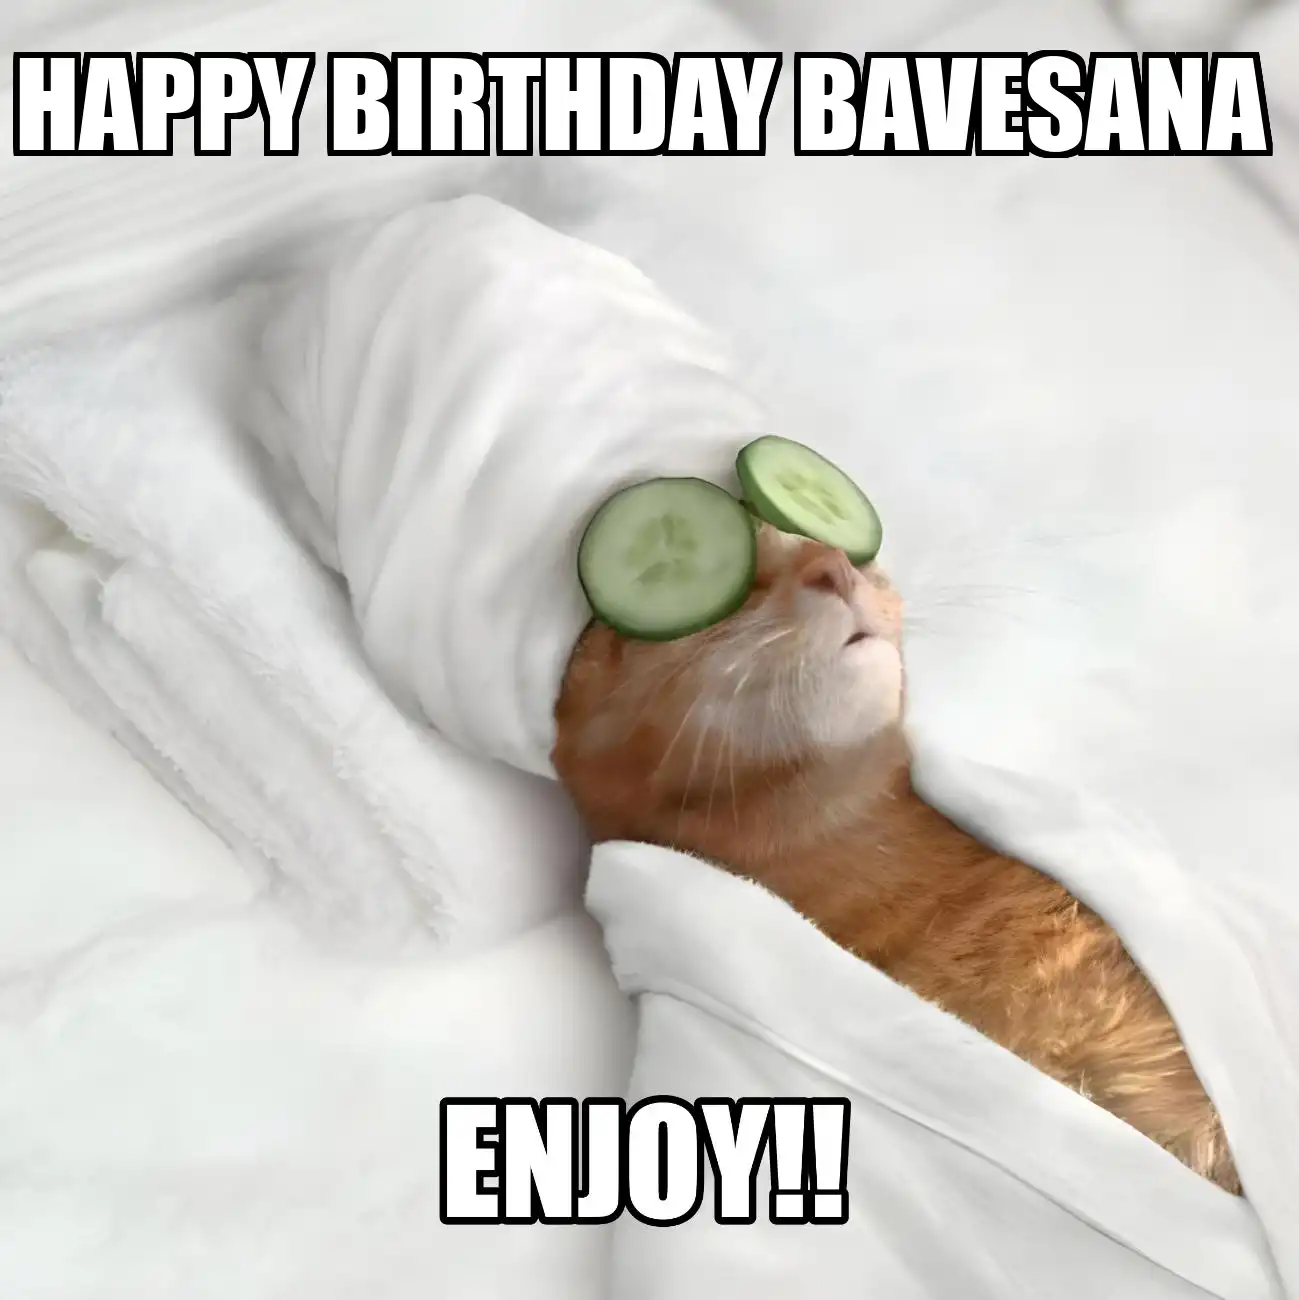 Happy Birthday Bavesana Enjoy Cat Meme